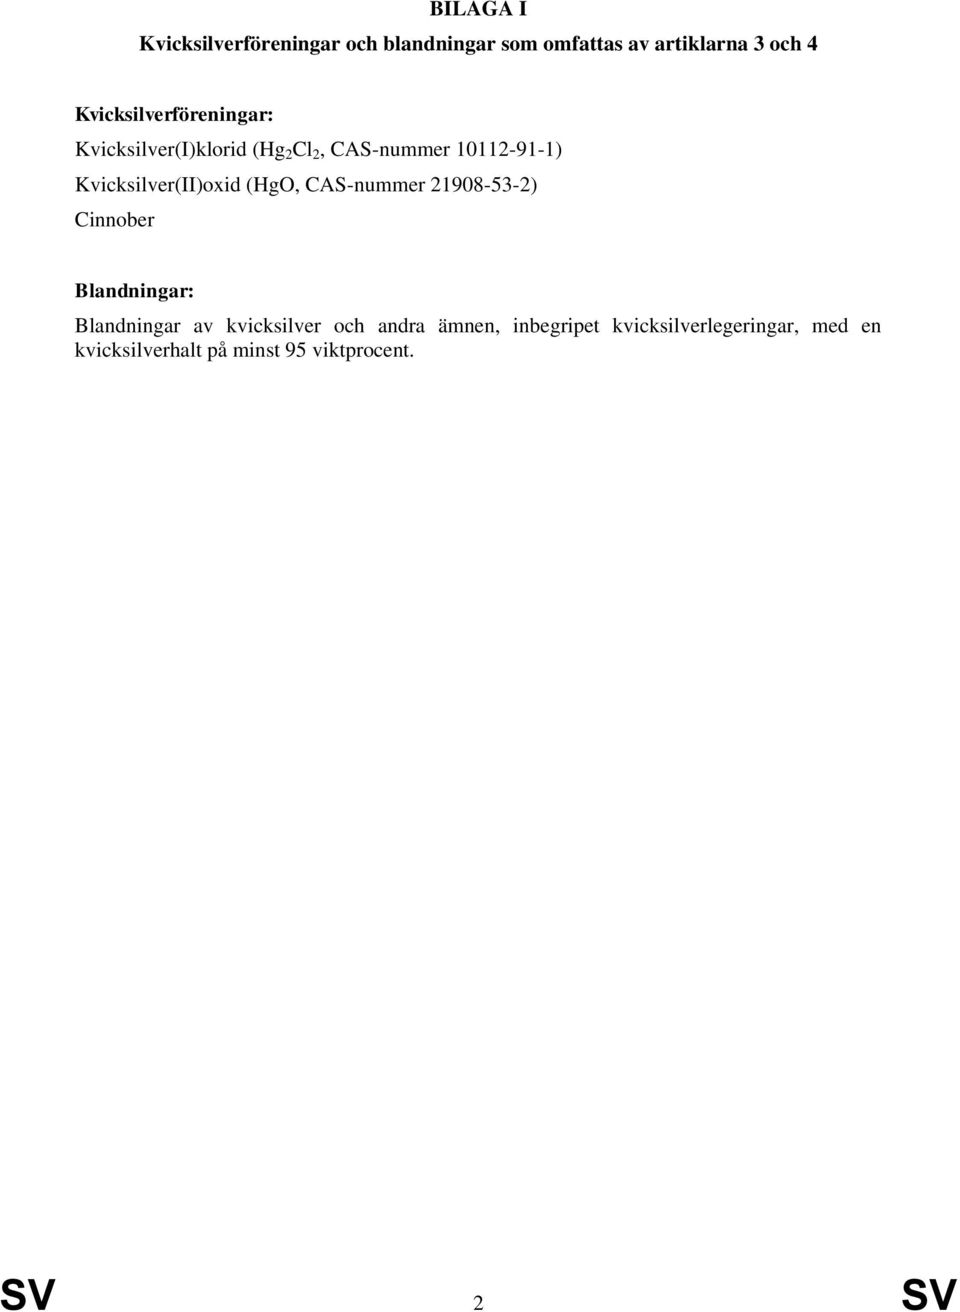 Kvicksilver(II)oxid (HgO, CAS-nummer 21908-53-2) Cinnober Blandningar: Blandningar av